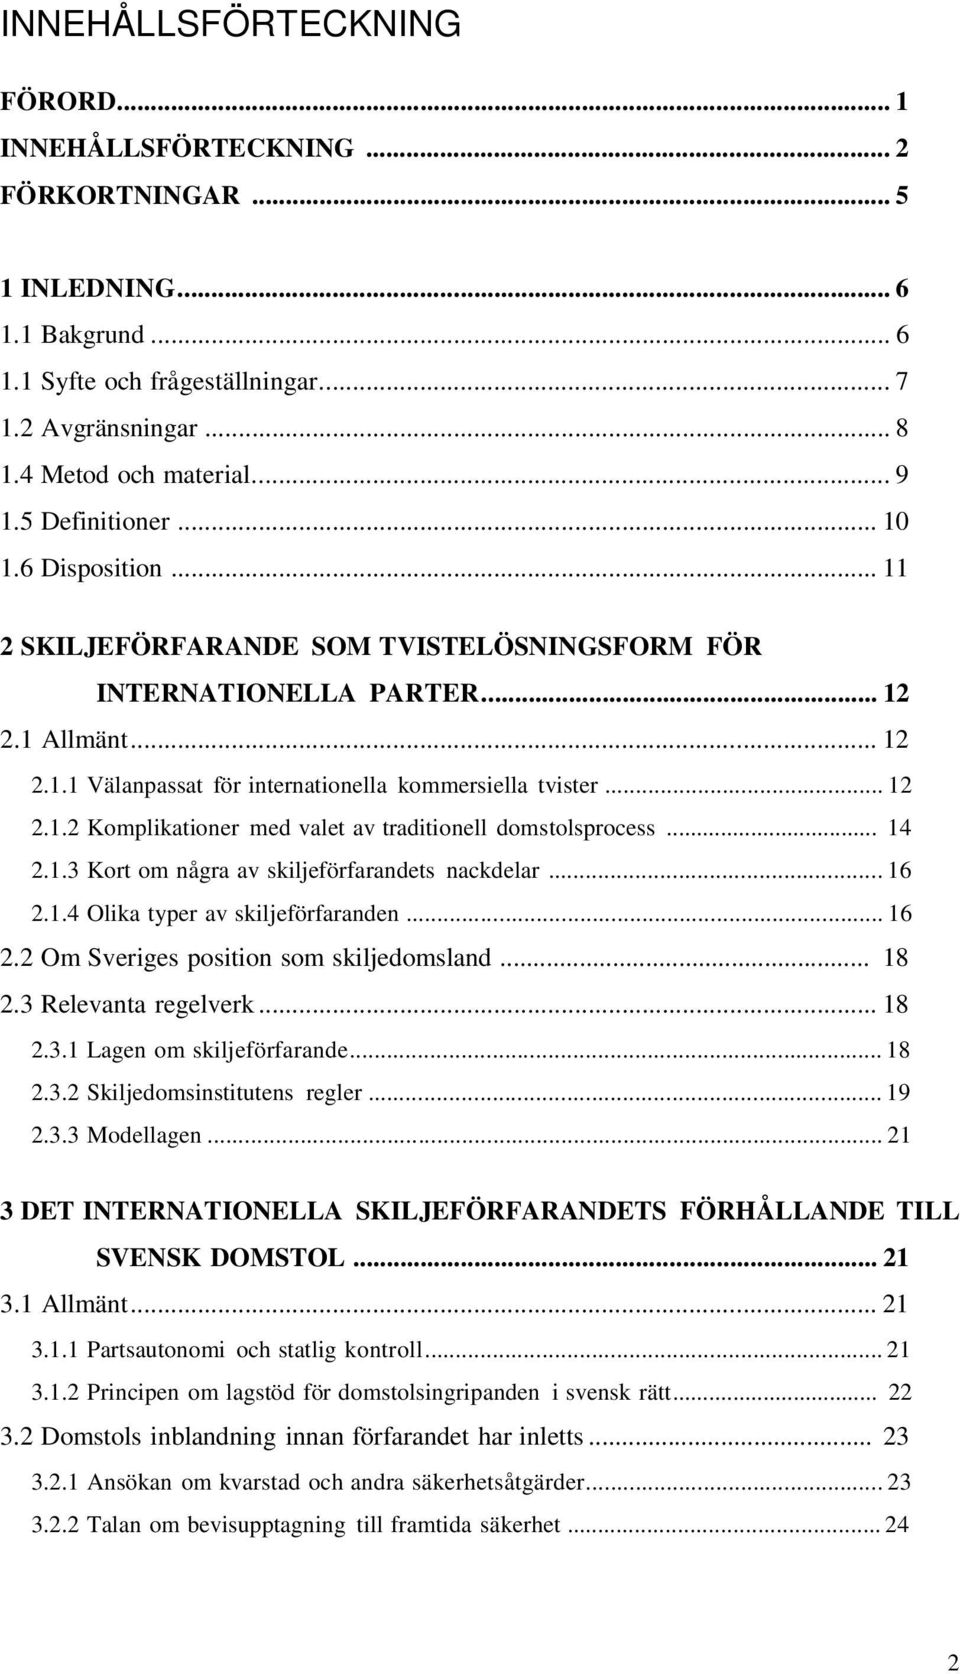 .. 12 2.1.2 Komplikationer med valet av traditionell domstolsprocess... 14 2.1.3 Kort om några av skiljeförfarandets nackdelar... 16 2.1.4 Olika typer av skiljeförfaranden... 16 2.2 Om Sveriges position som skiljedomsland.